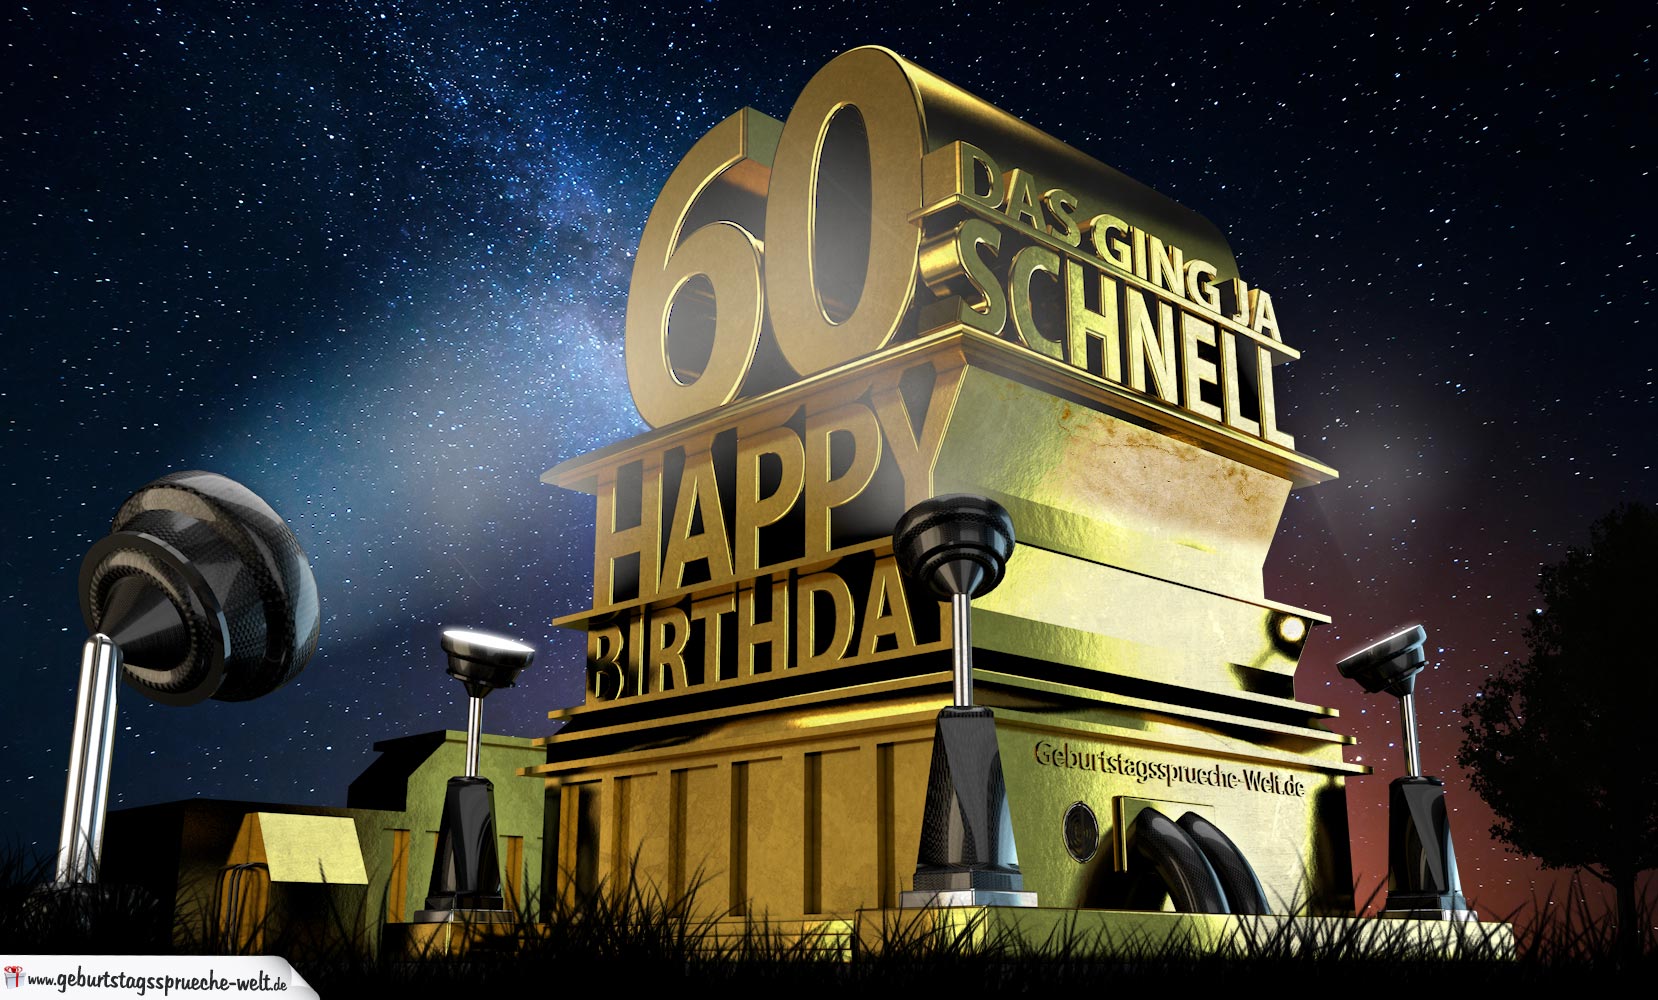 Kostenlose Geburtstagskarte Zum 60 Geburtstag Im Stile Von Hollywood Happy Birthday Geburtstagsspruche Welt